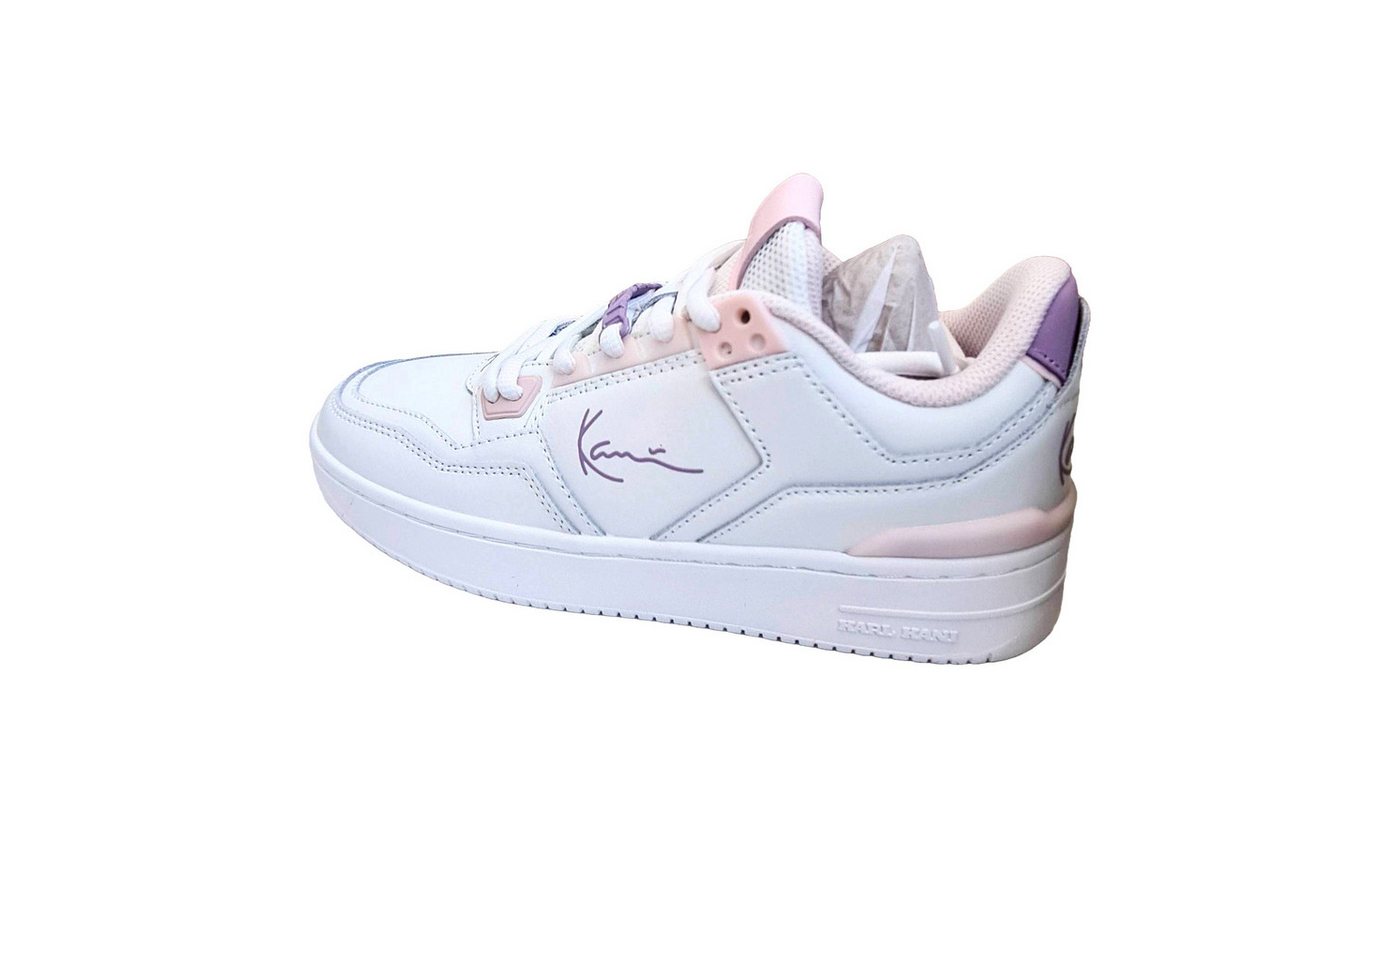 Karl Kani Karl Kani 89 LXRY Schuhe Damen Sneaker White Pink Lilac Sneaker von Karl Kani